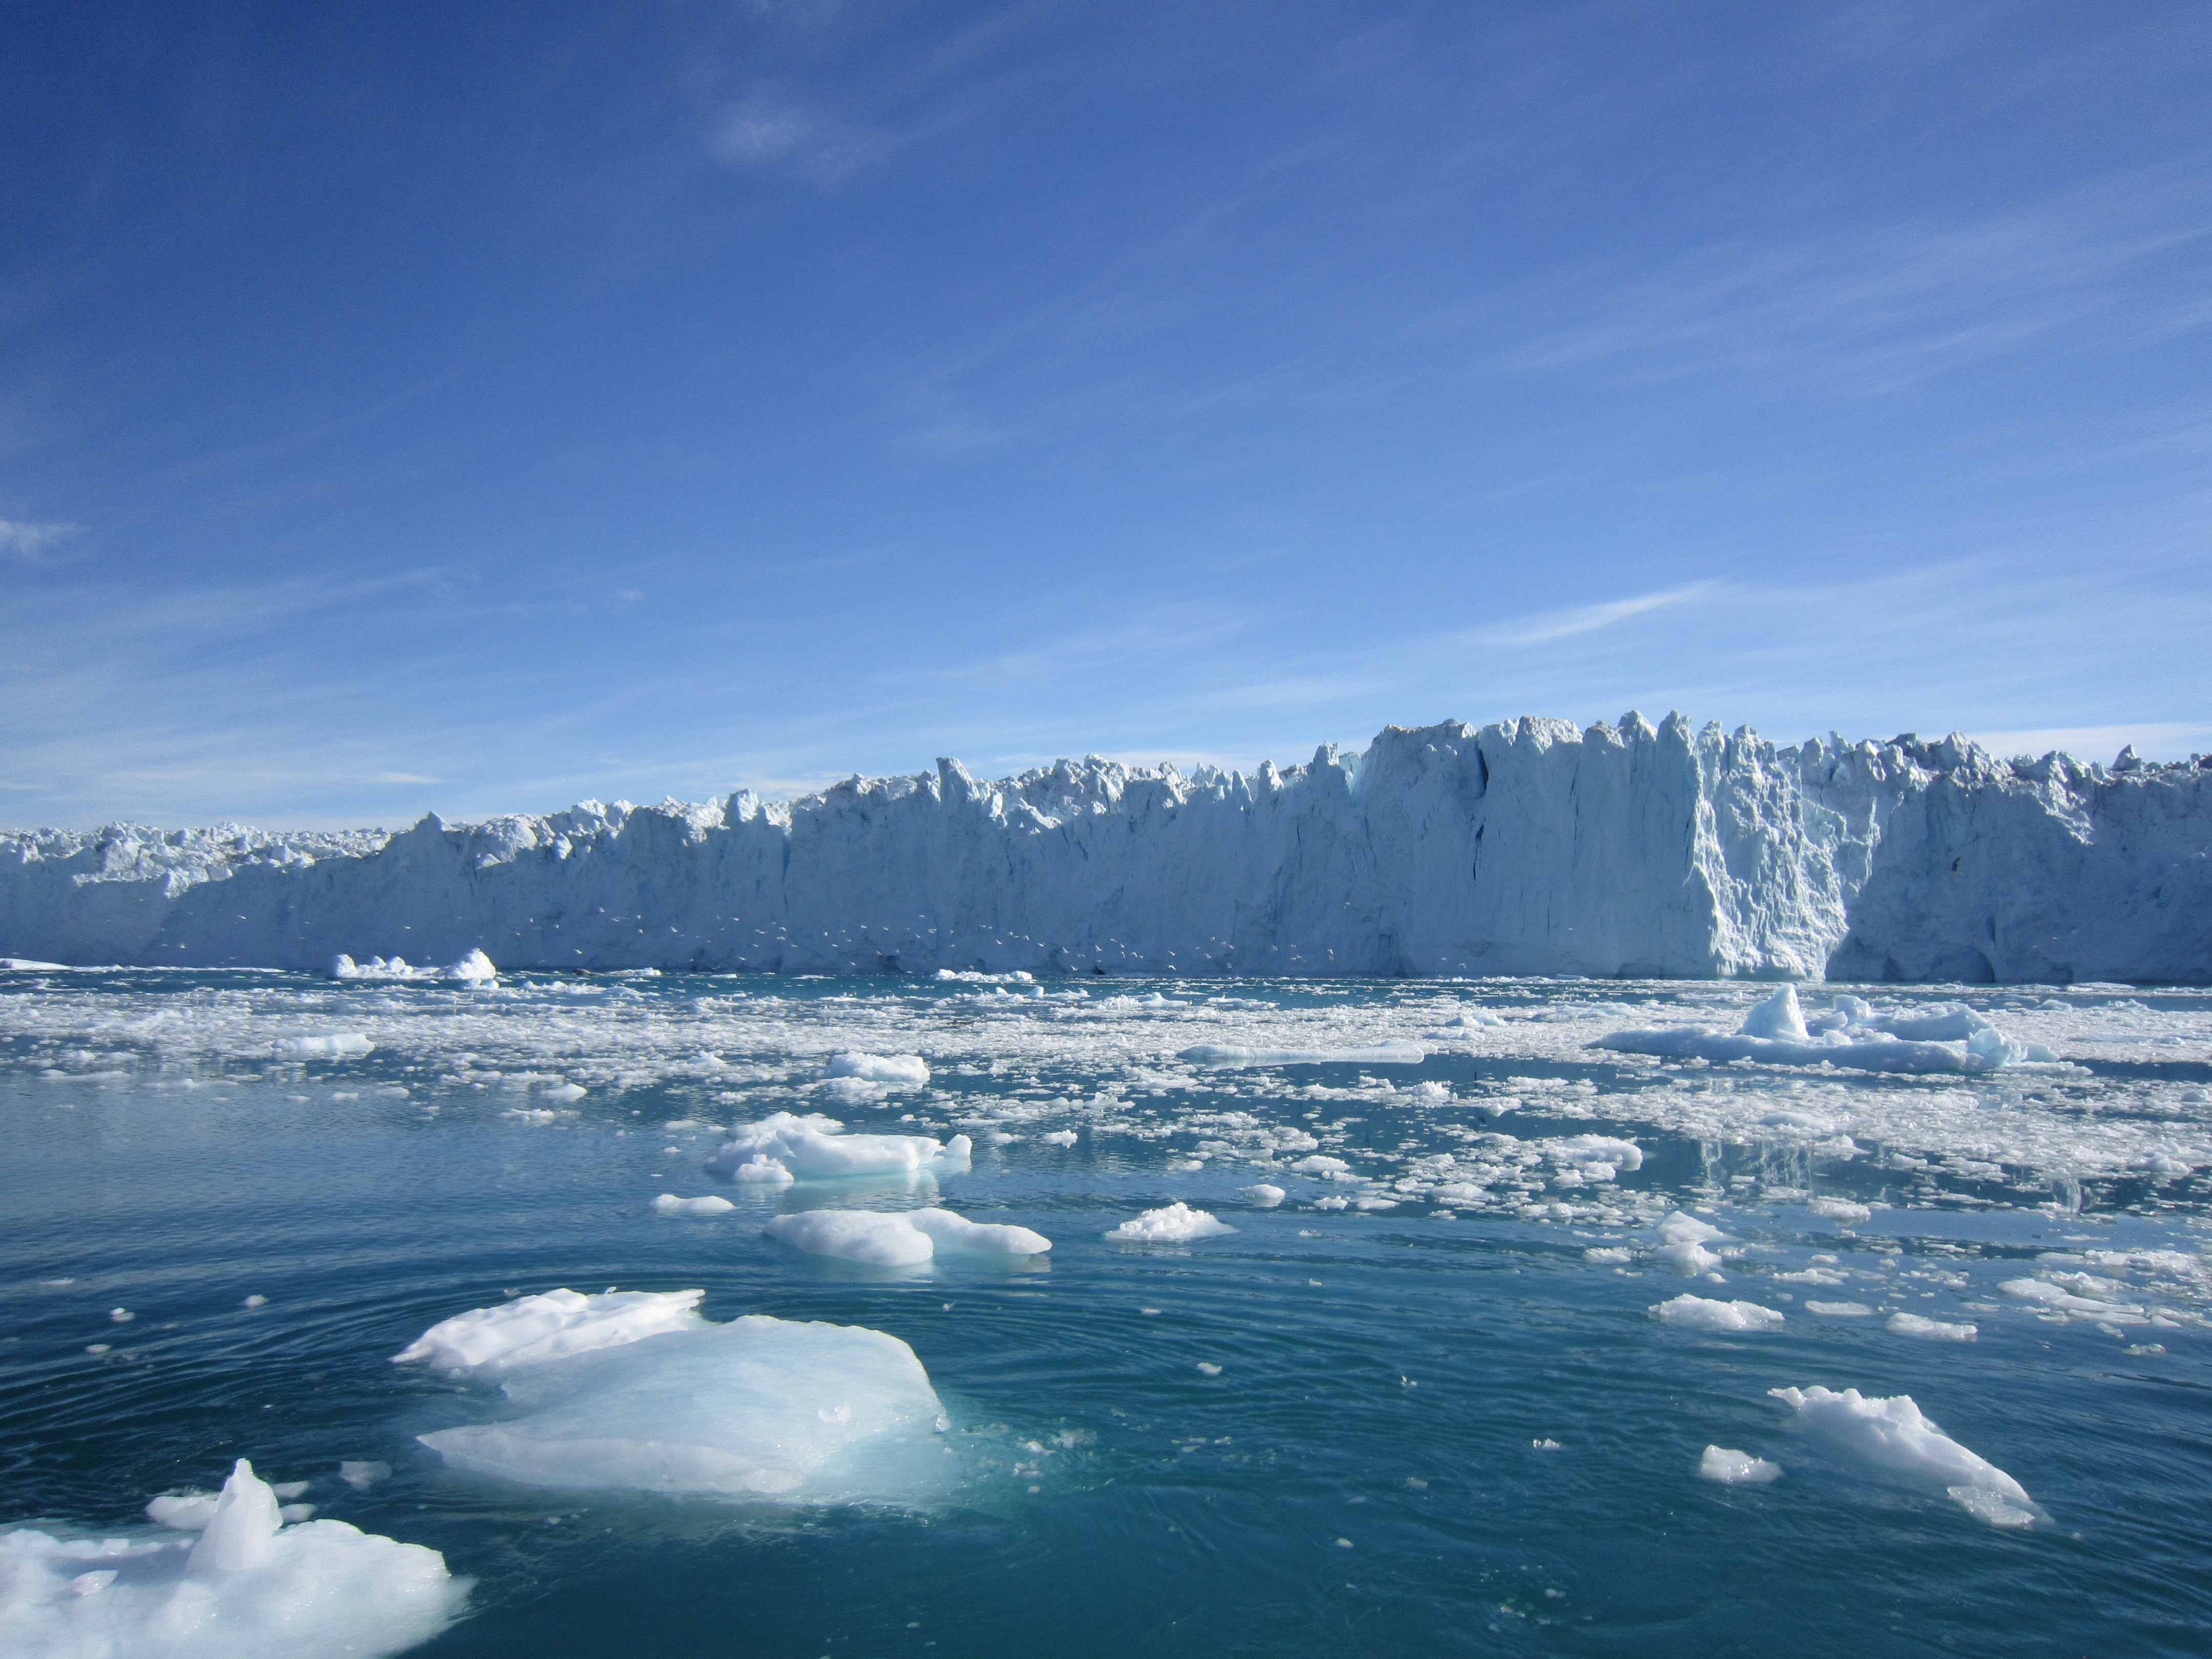 antarctica-is-gaining-ice-niharonline.jpg